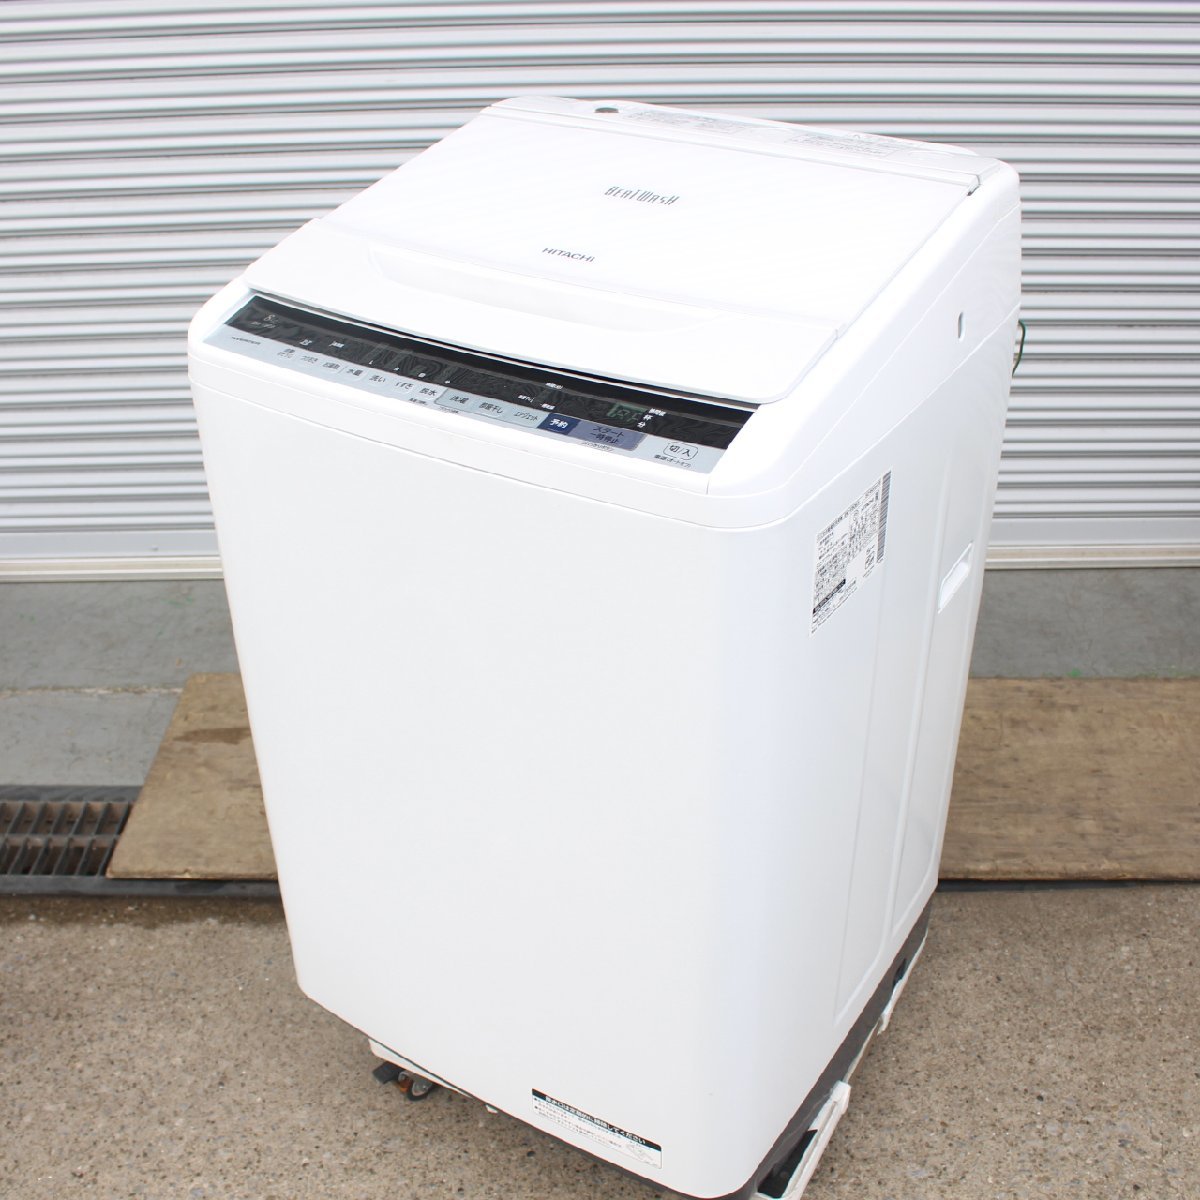 横浜市鶴見区にて 日立 全自動洗濯機 BW-V80B 2018年製 を出張買取させて頂きました。